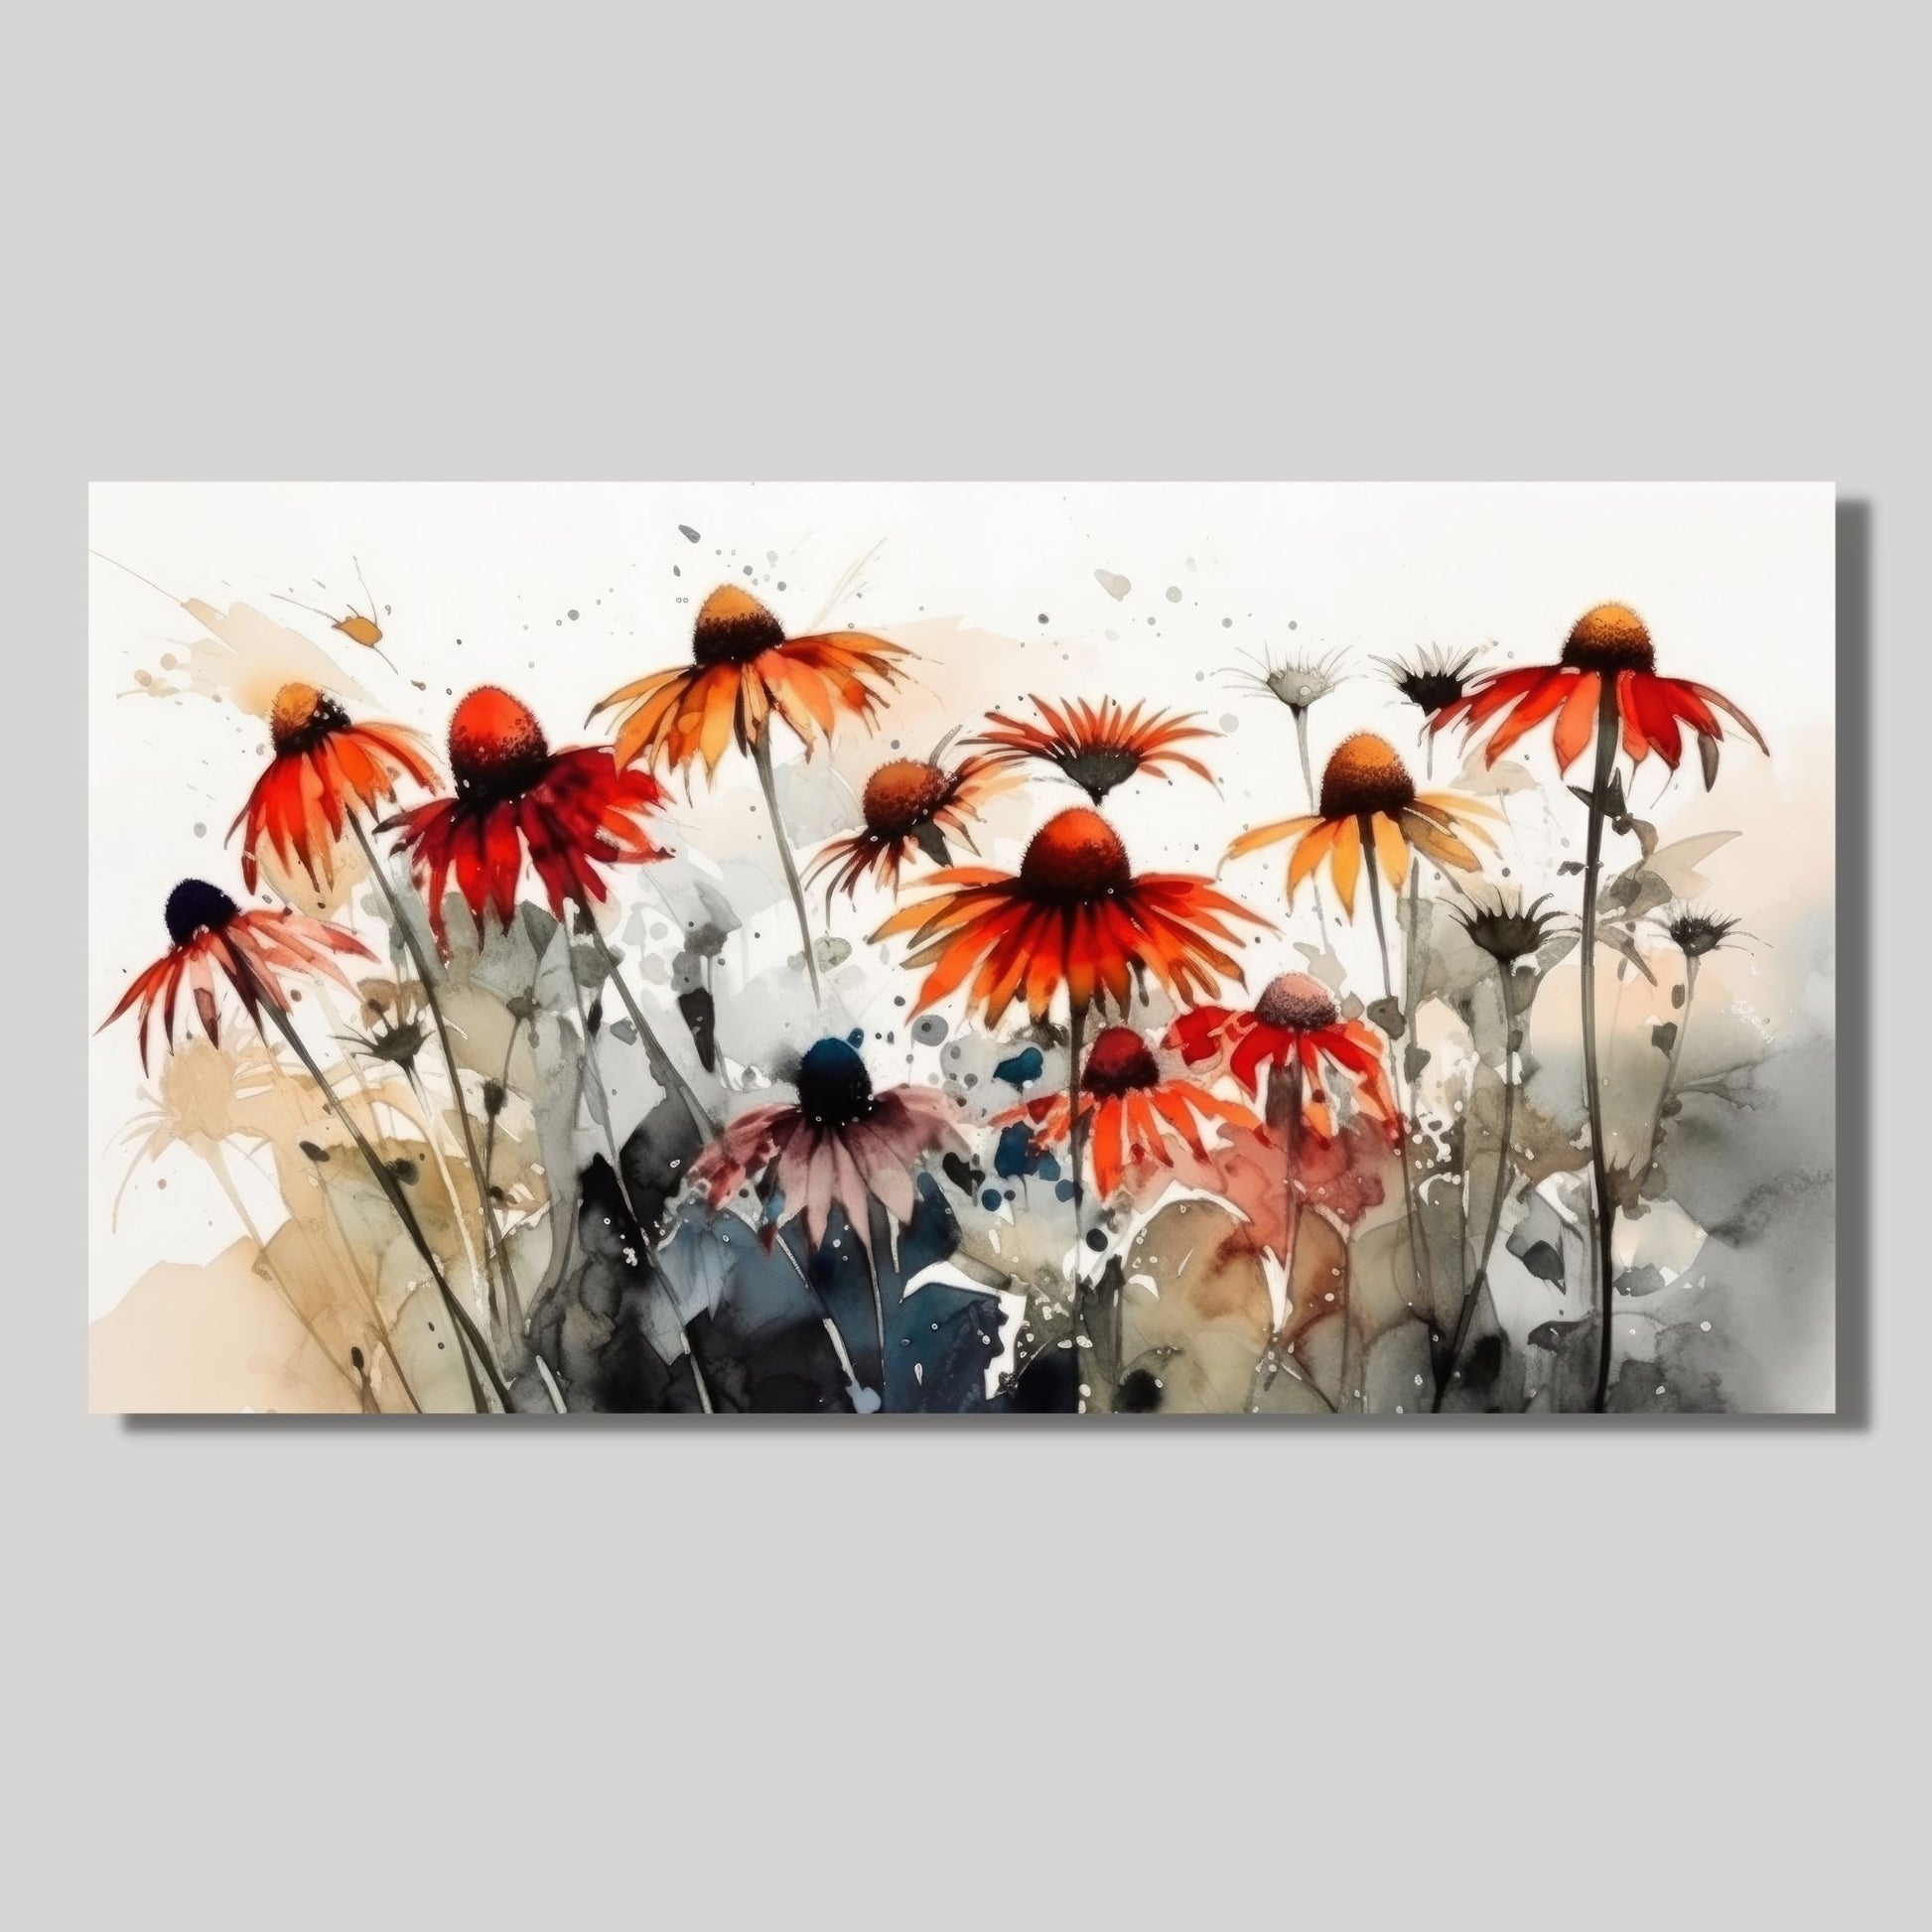 Nydelig abstrakt motiv av en eng med Solhattblomster. Dette er en grafisk fremstilling på lerret, Blomstene er i rød-oransje nyanser.